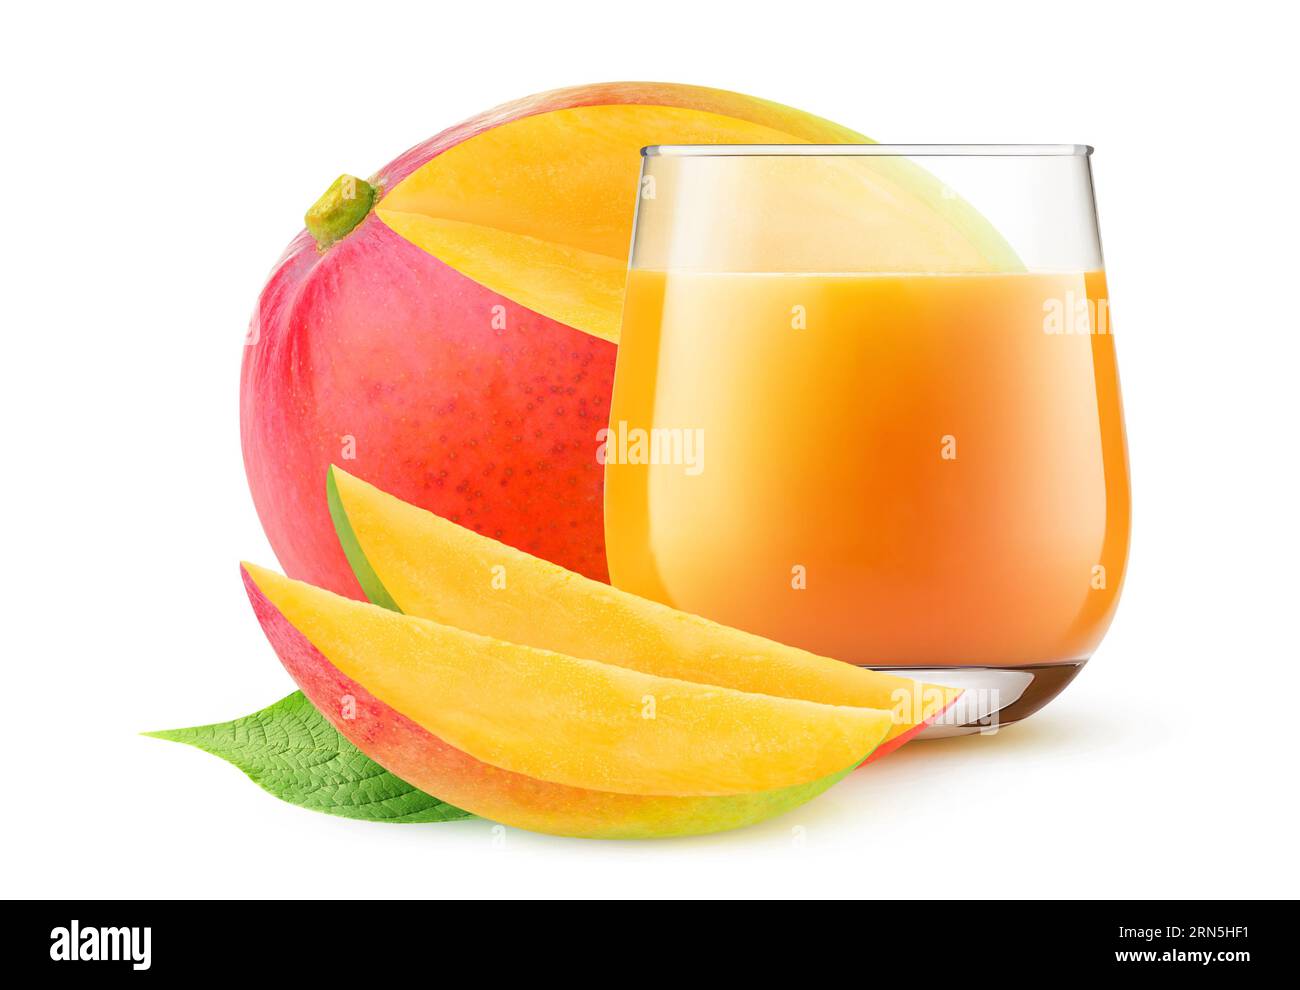 Verre de jus de mangue et fruit de mangue rouge tranché, isolé sur fond blanc Banque D'Images